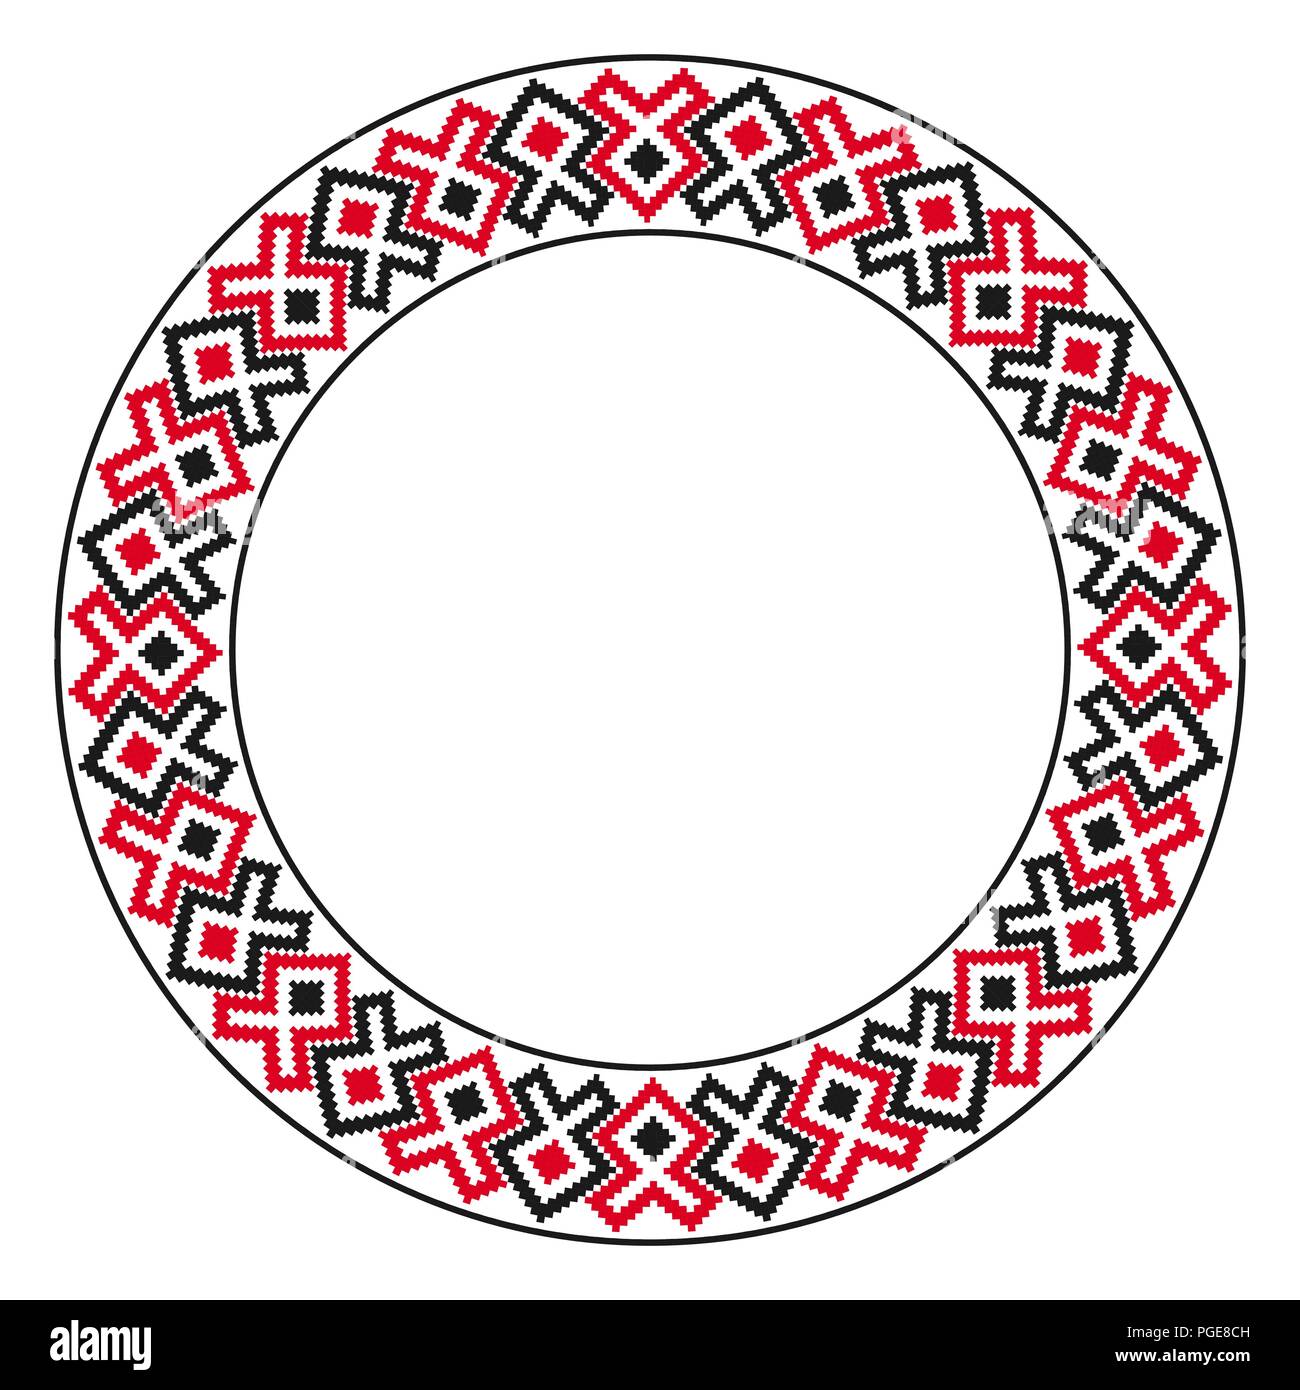 Broderie ronde traditionnelle. Vector illustration de ronde ethnique motif brodé géométrique pour votre conception Illustration de Vecteur